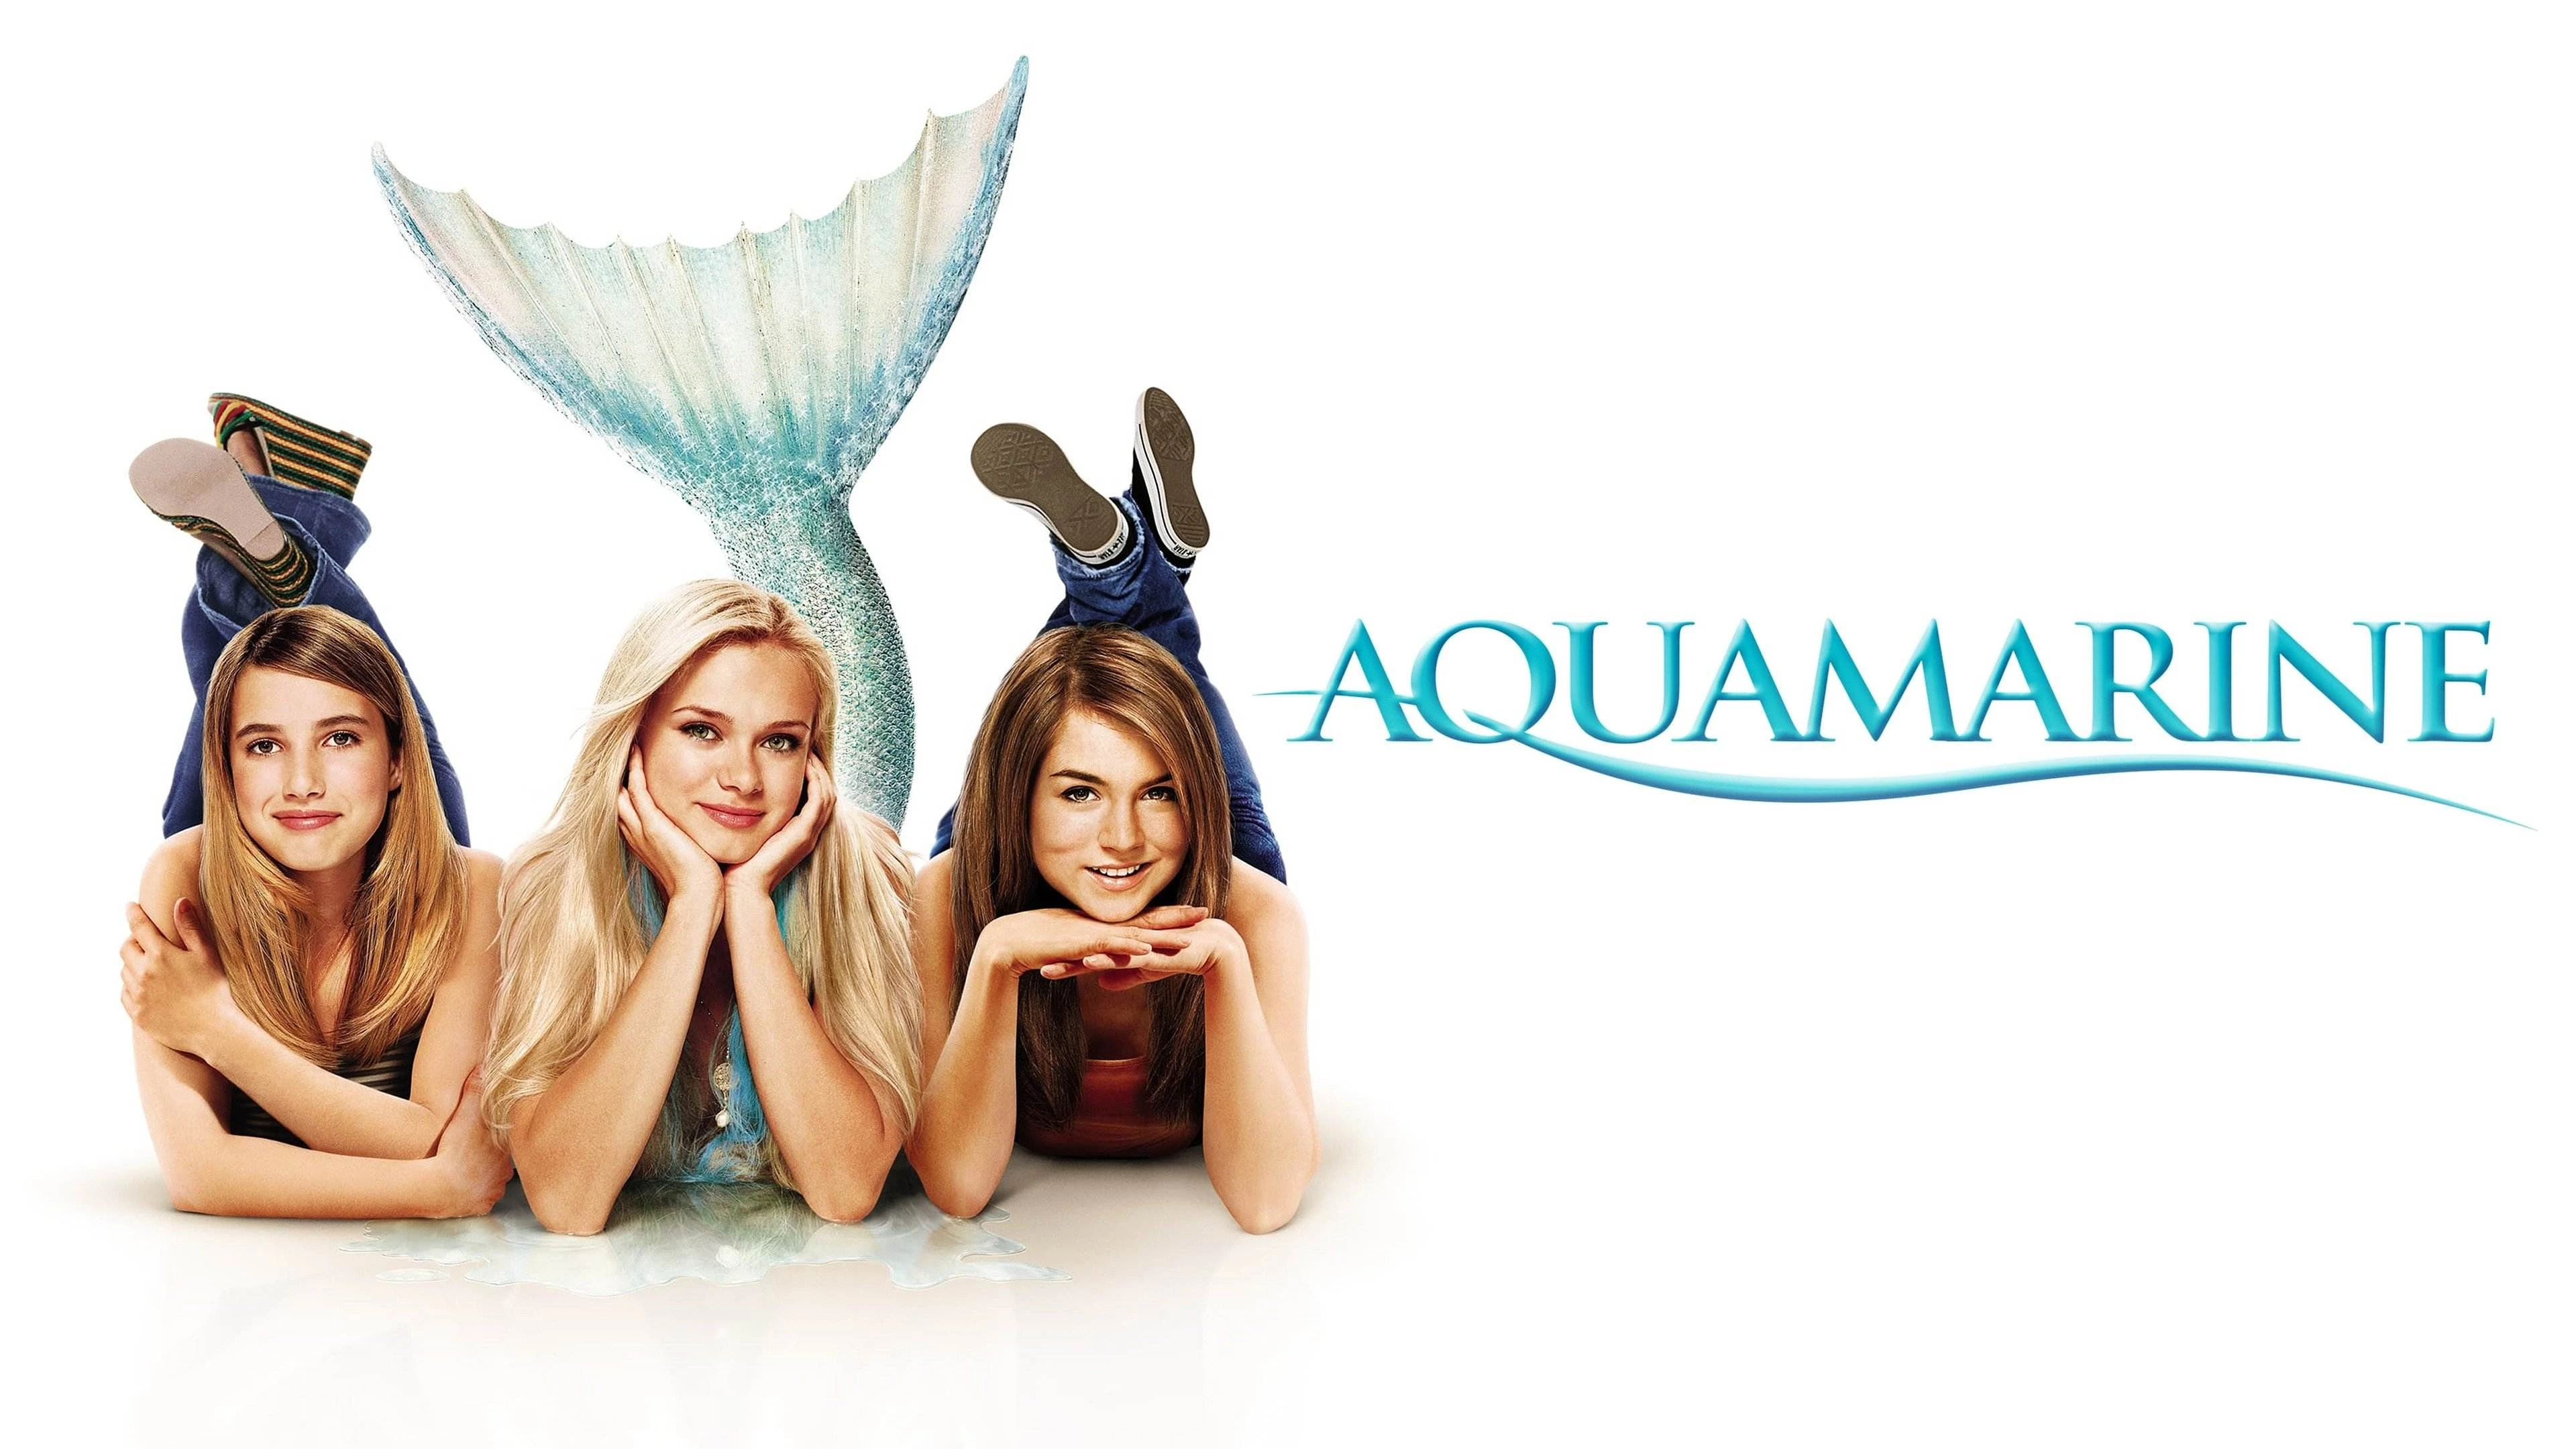 movies like Princess Diaries - "Aquamarine" (2006)